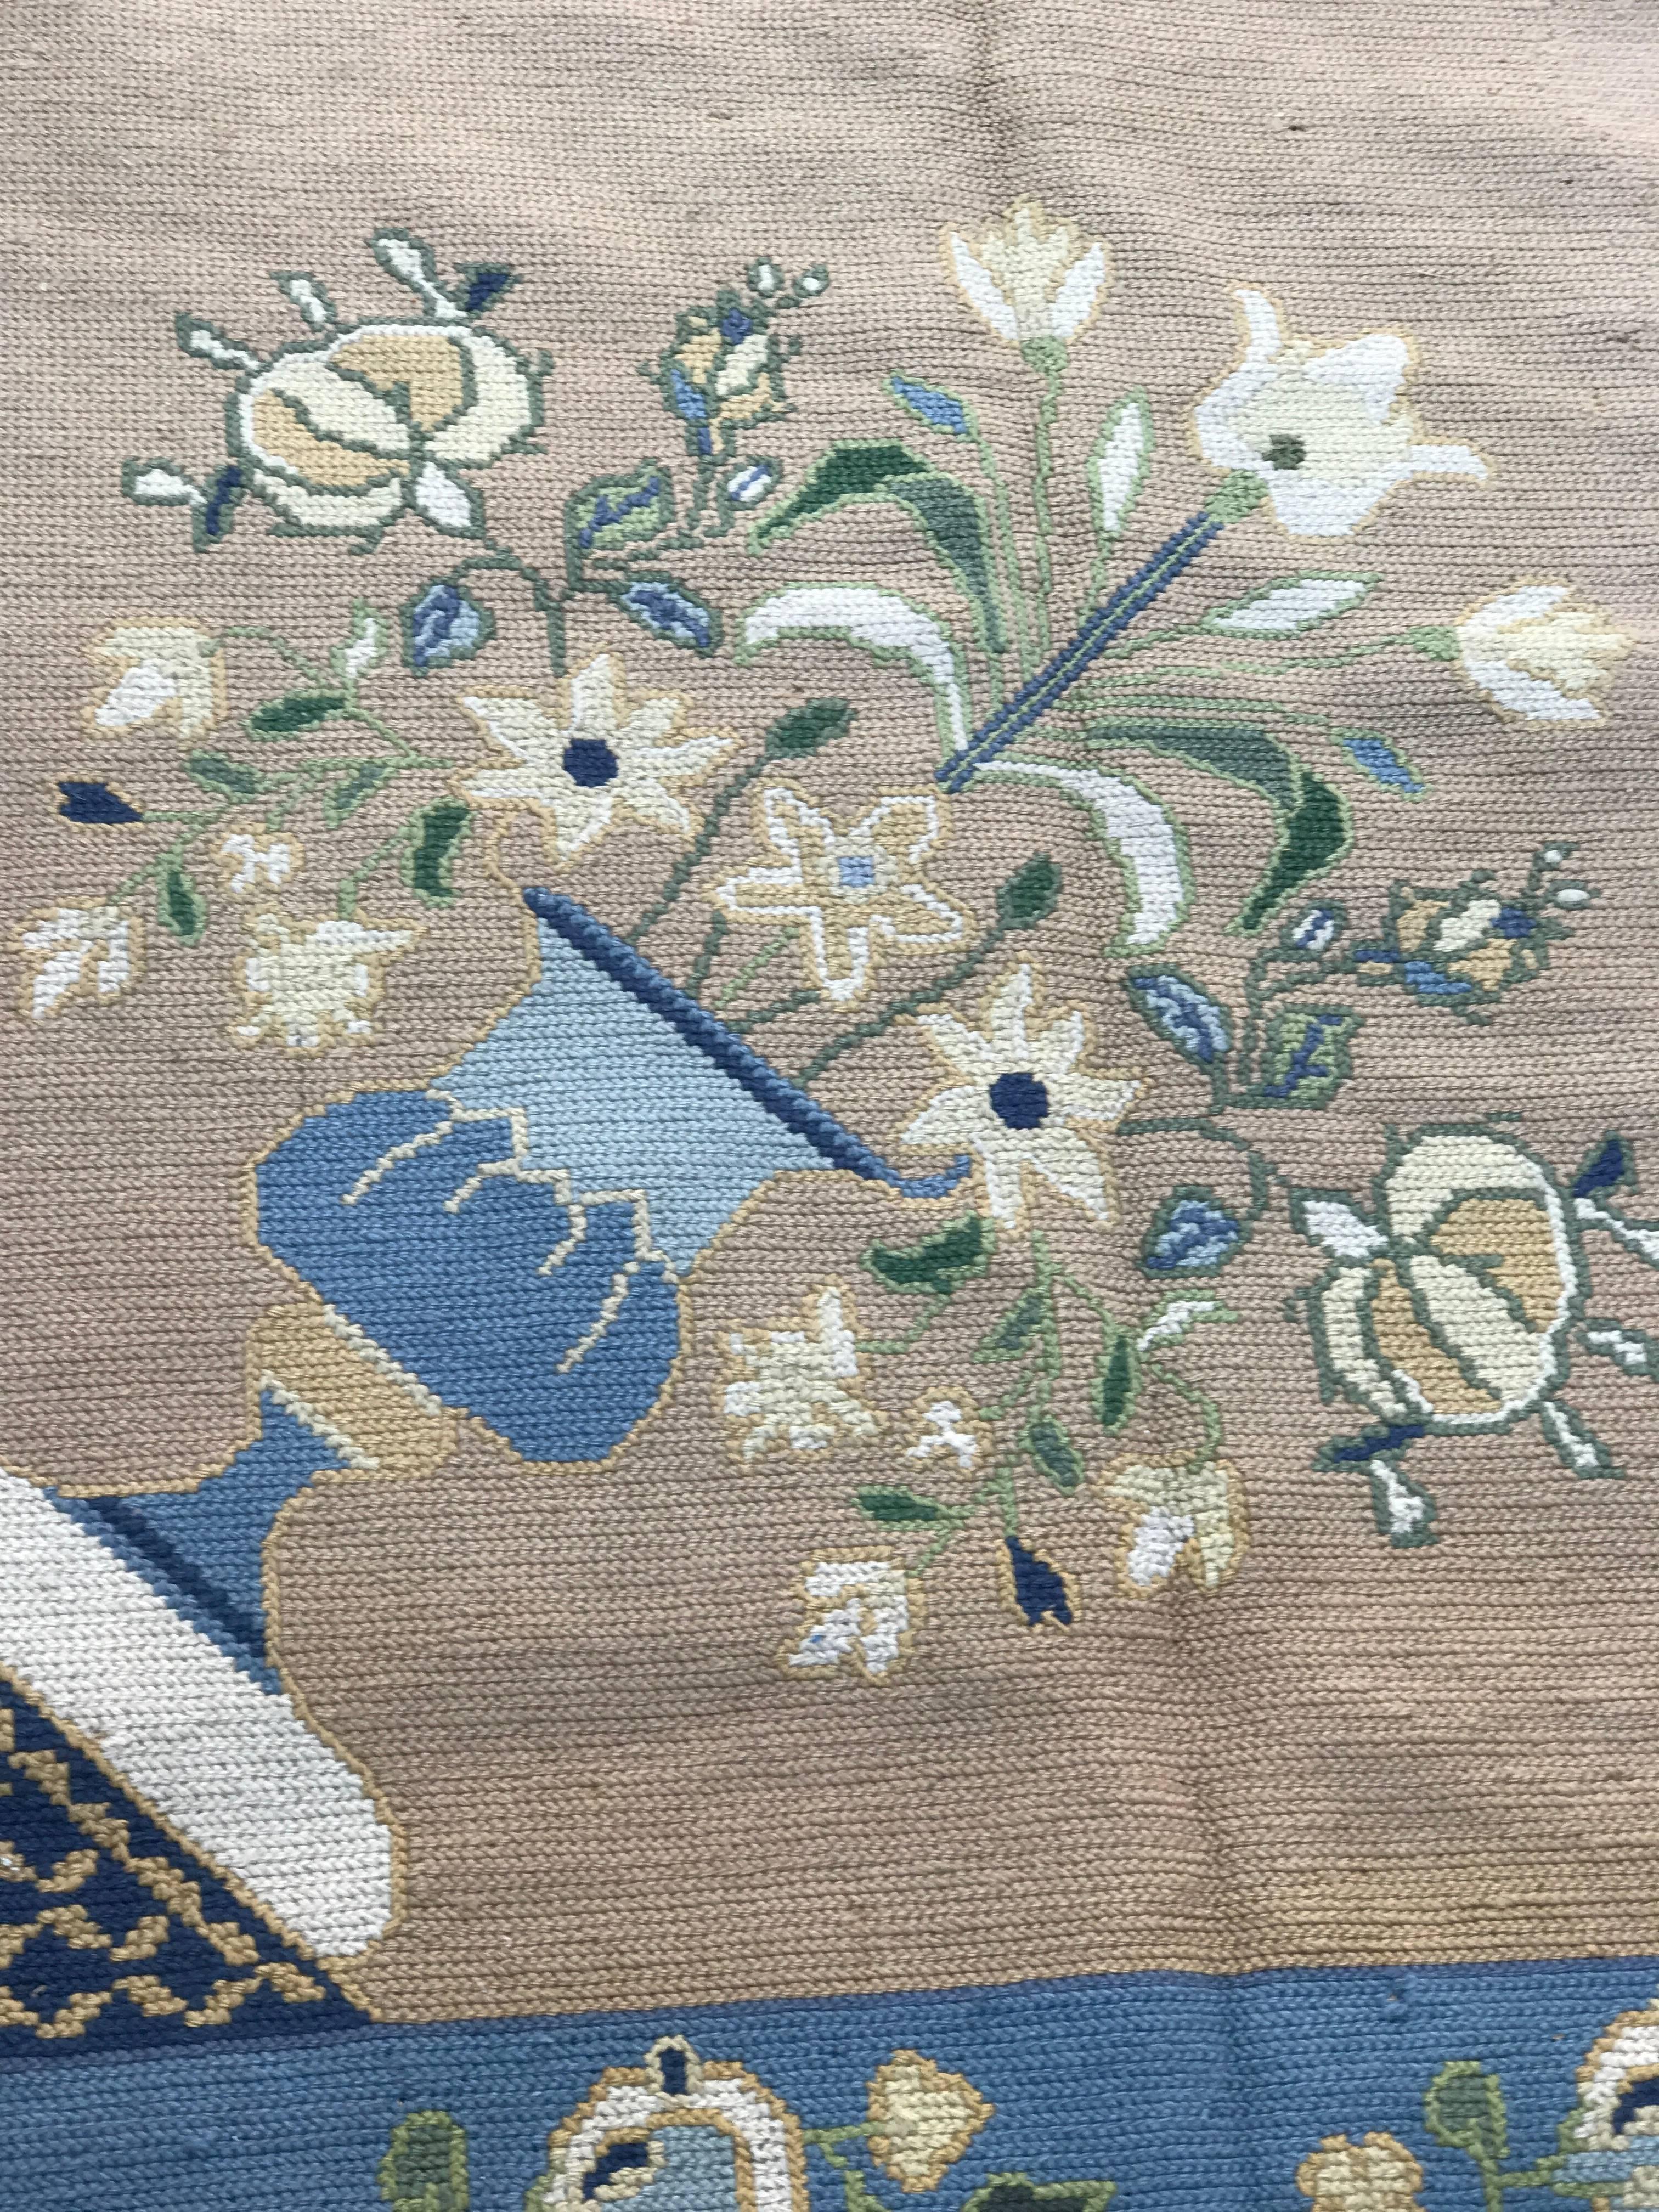 Tapis portugais bleu pastel clair et beige - Des fleurs et des guirlandes entrelacées composent le motif du champ central et d'autres éléments décoratifs. Ce tapis est idéal pour un grand salon.
 Très bon état.